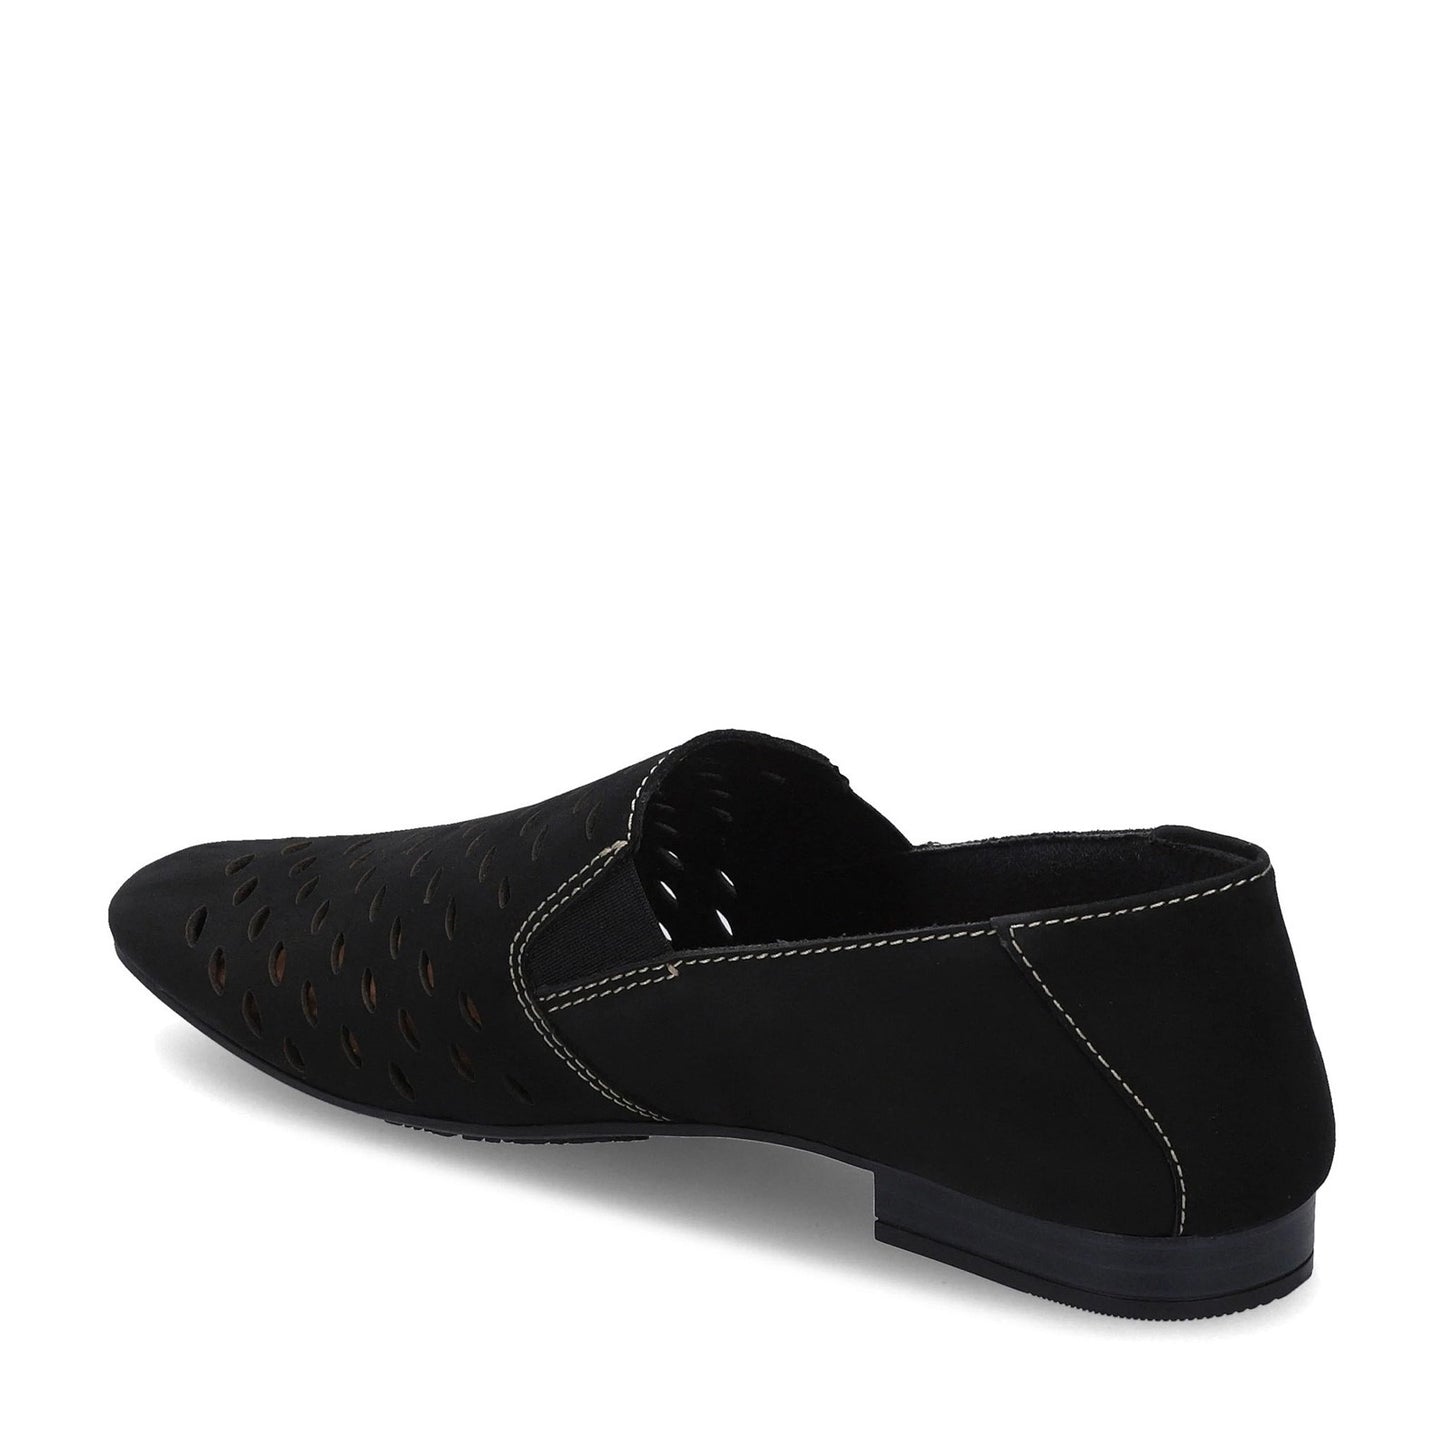 Peltz Shoes  Women's Earth Origins Rocco Loafer BLACK 256078W-001